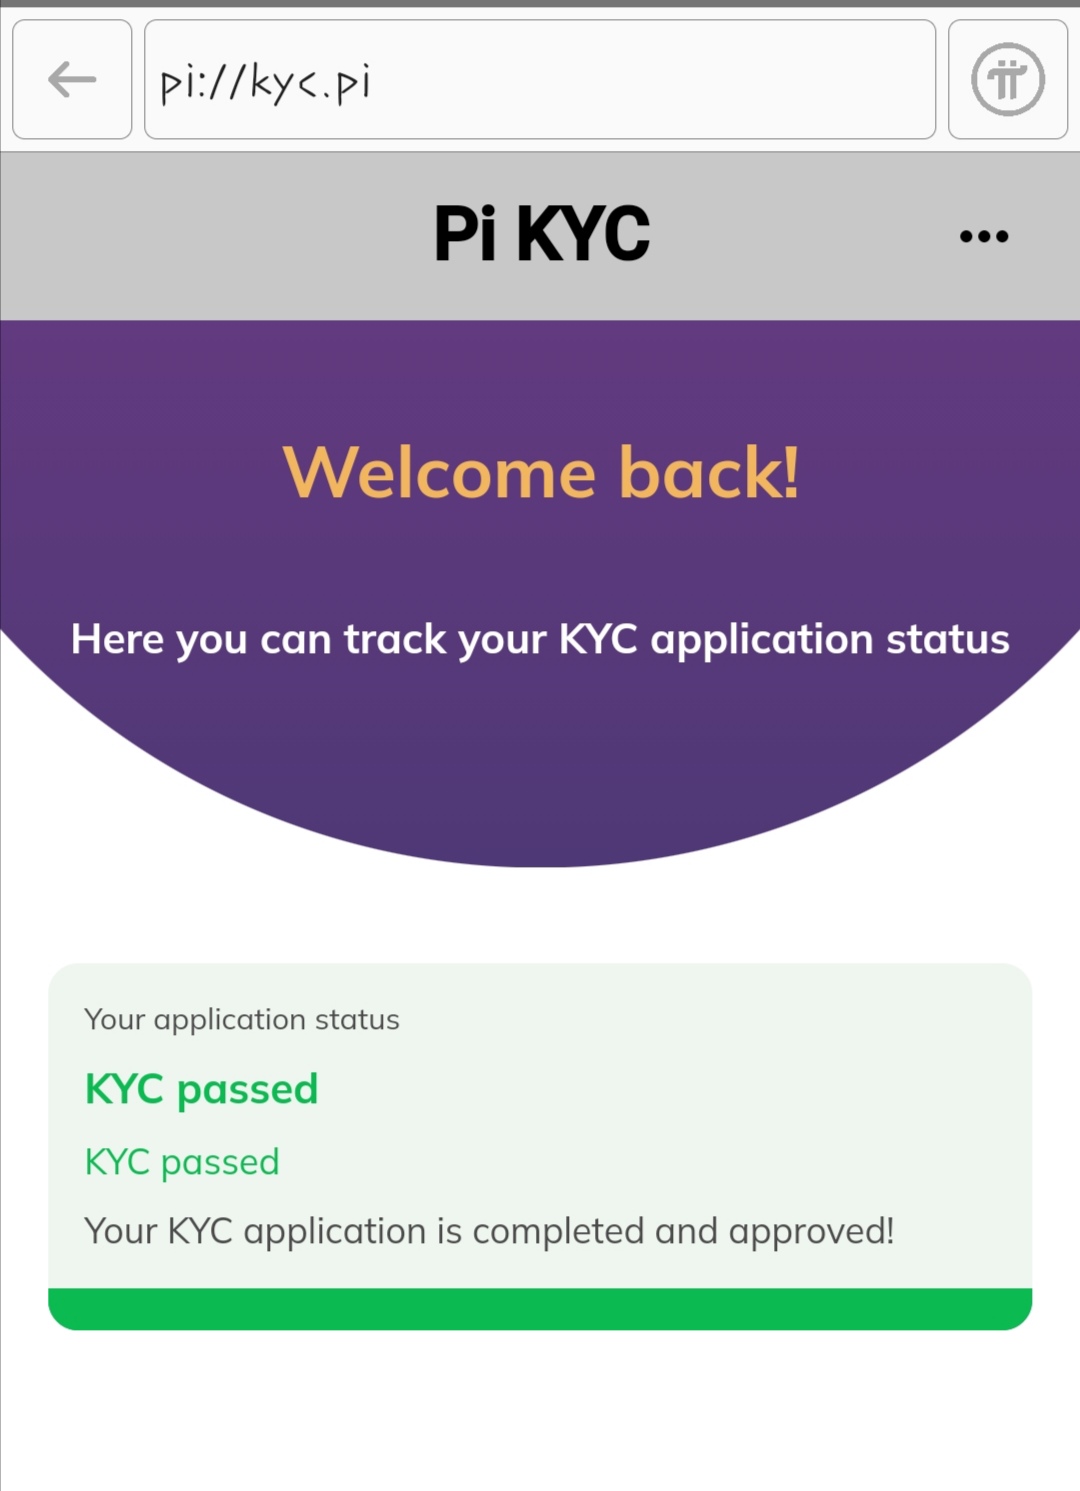 Pi KYC verification approval message. 